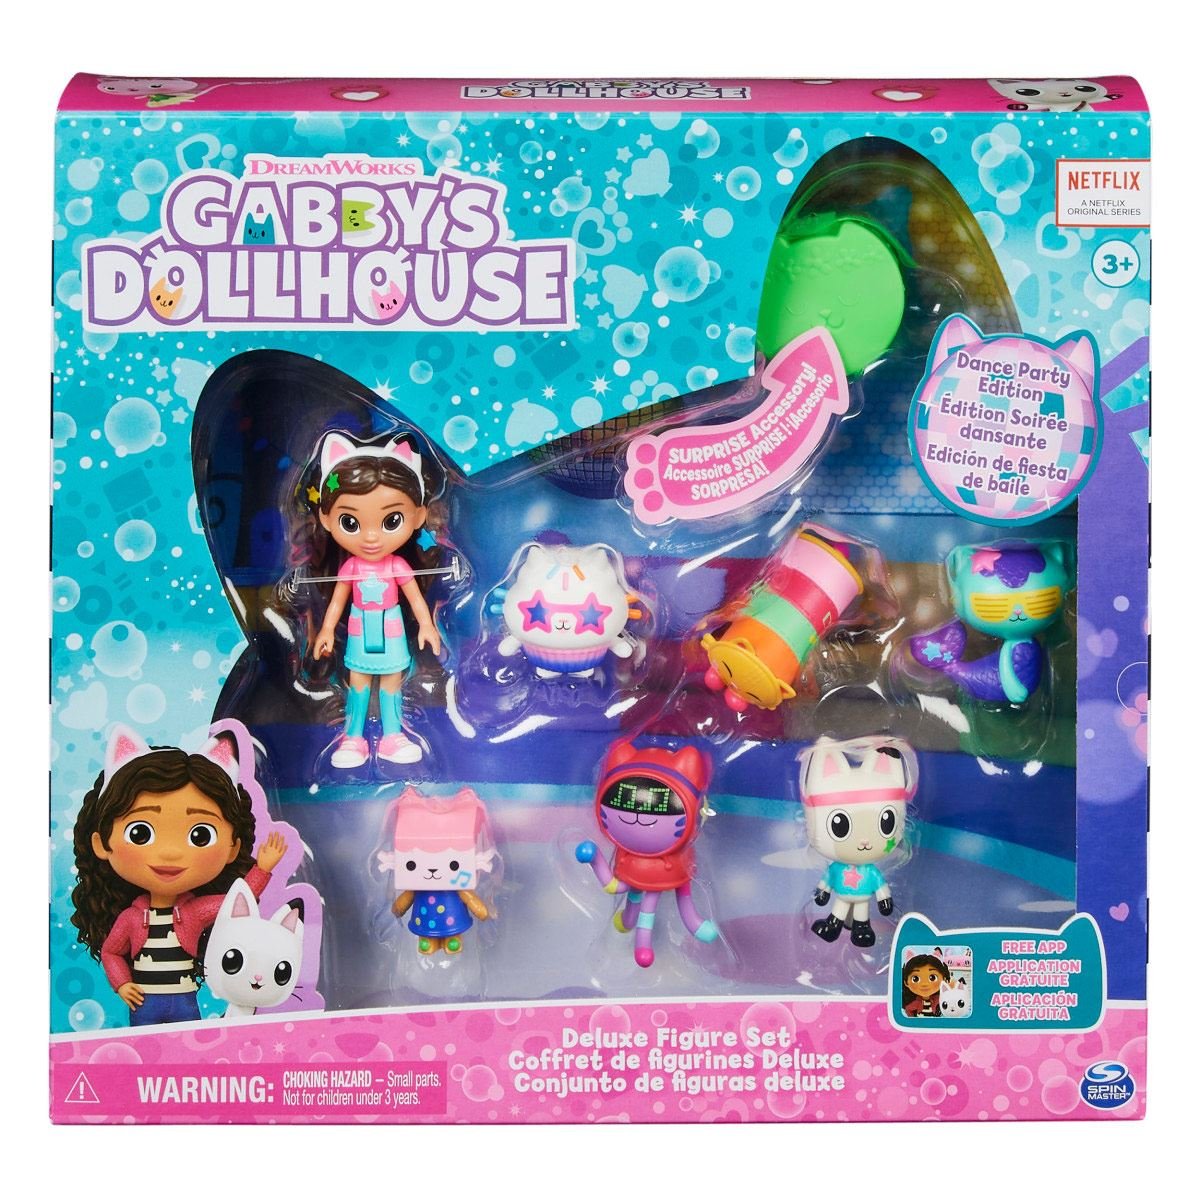 Gabby's Dollhouse - Muñeca de Gabby (edición de viaje) de La casa de  muñecas de Gabby con accesorios, 8 pulgadas, juguetes para niños a partir  de 3 años : Juguetes y Juegos 